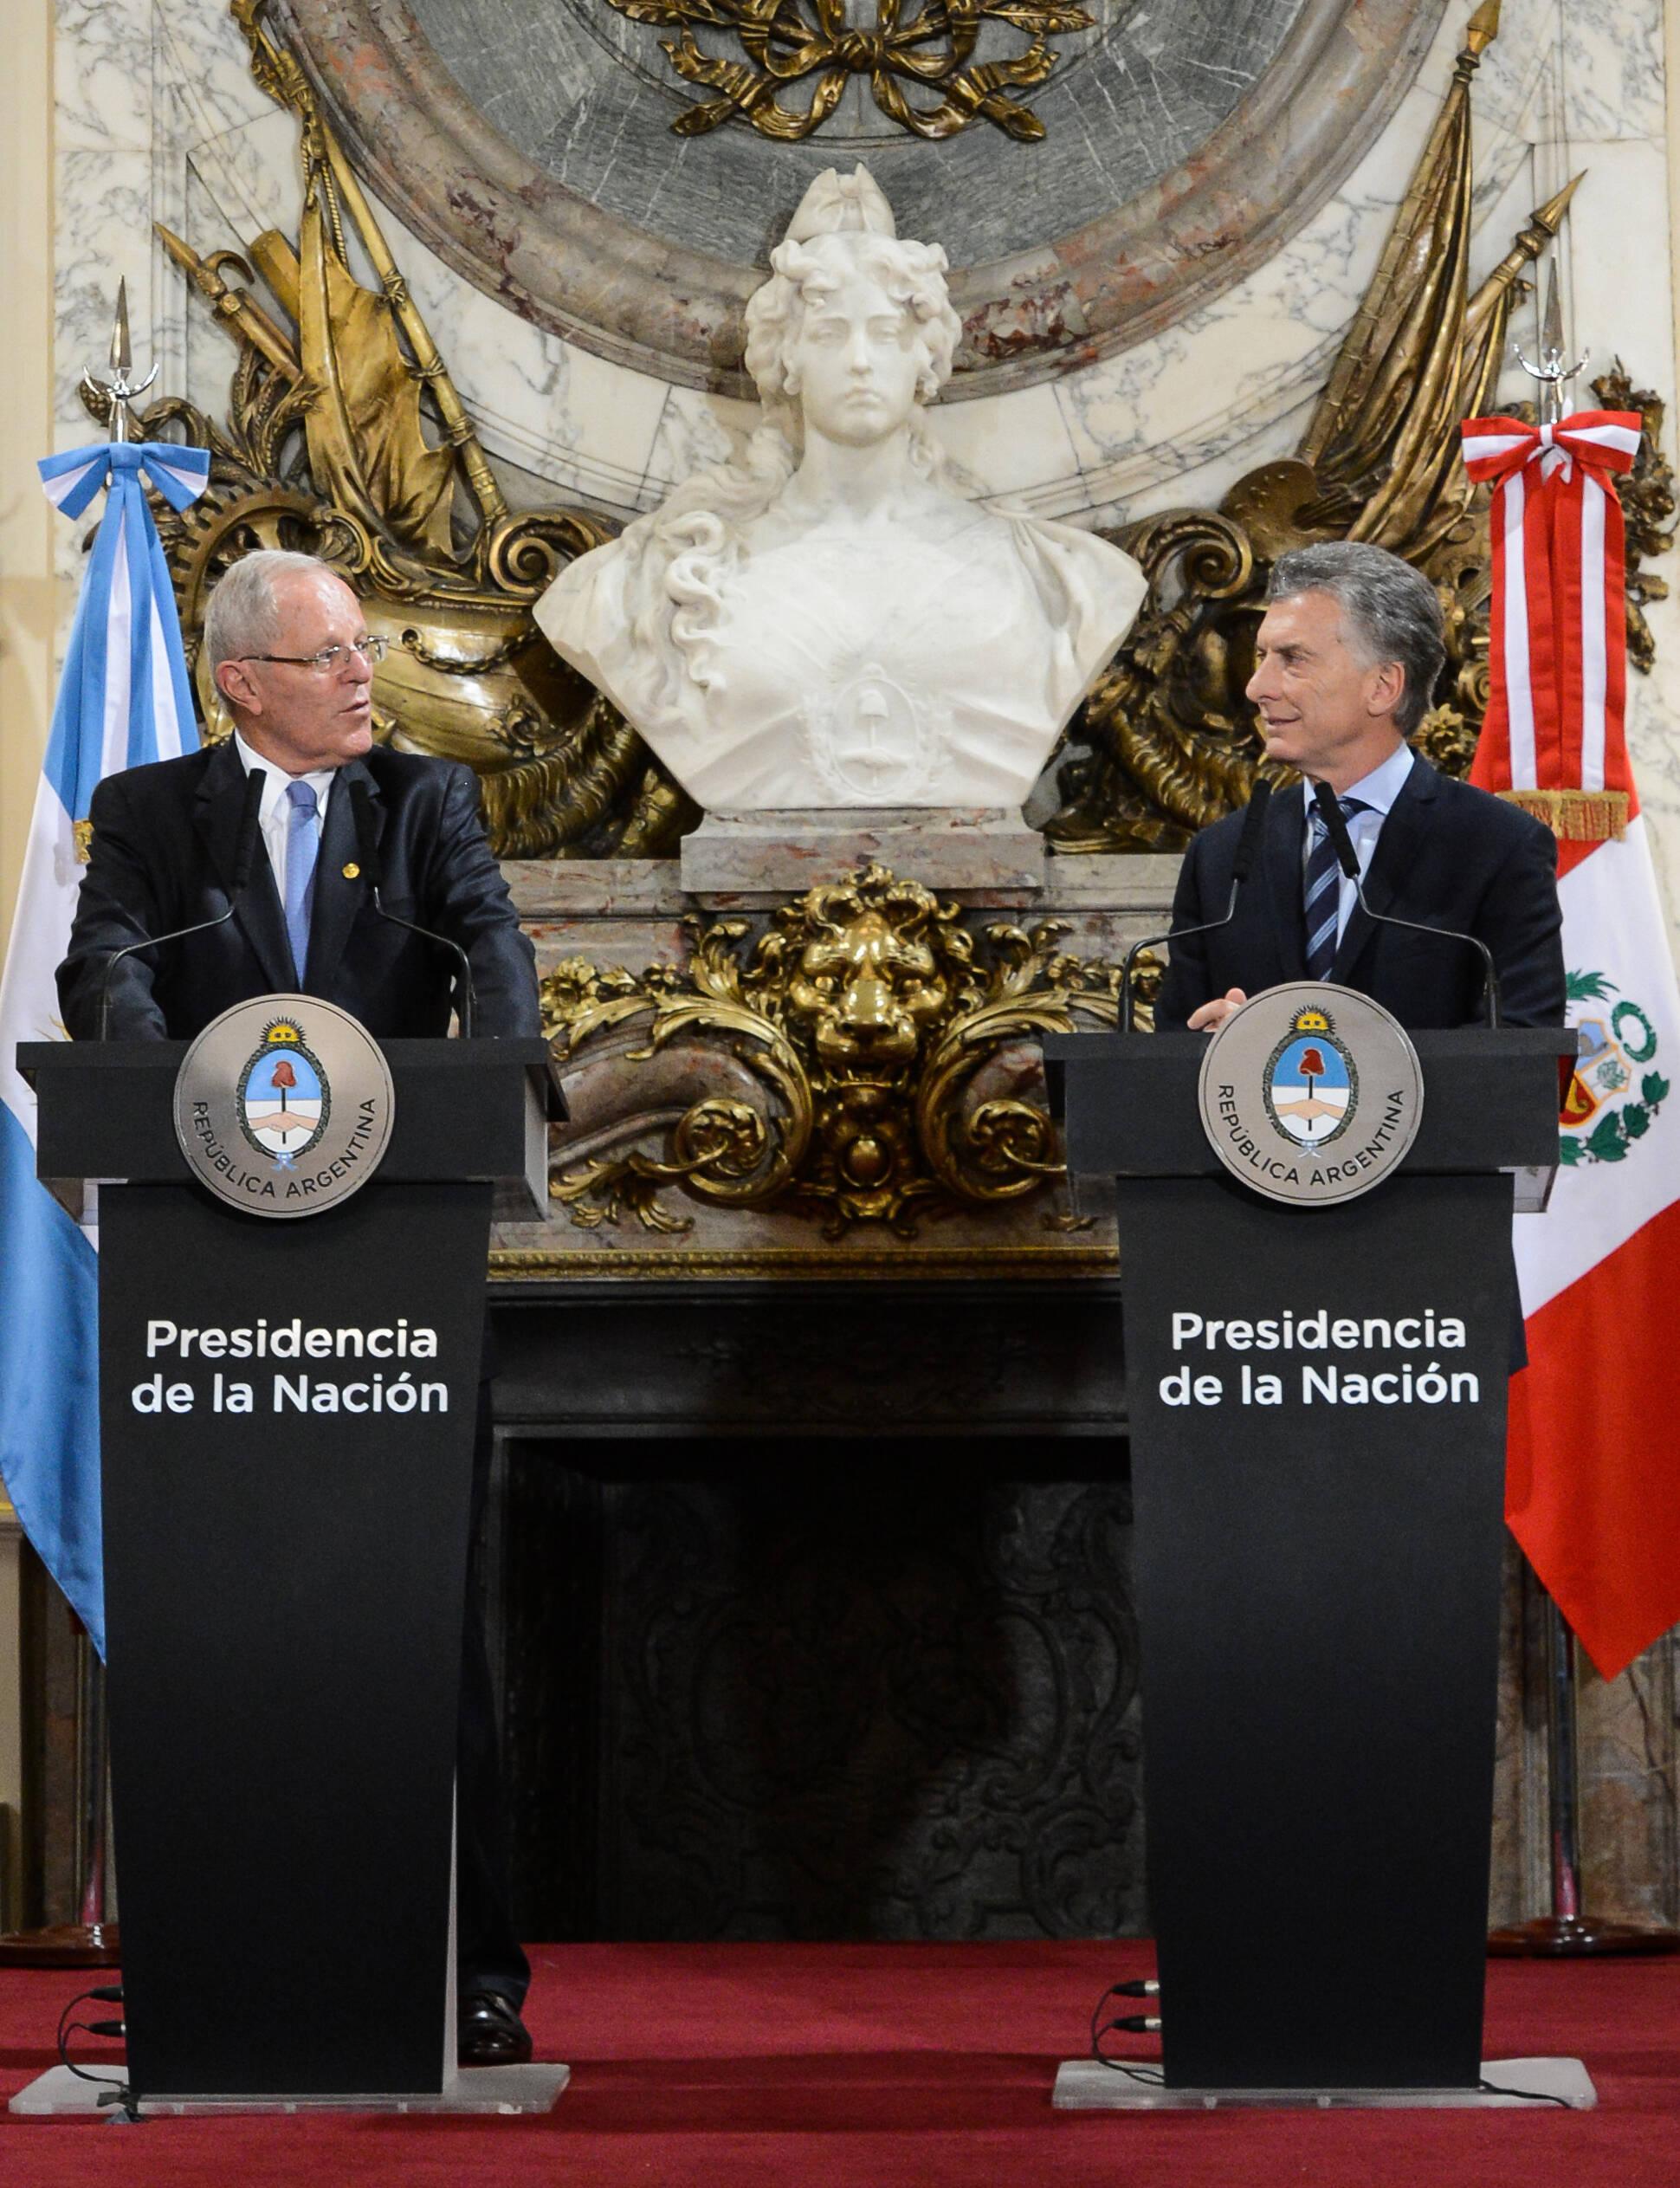 Los presidentes Macri y Kuczynski acordaron relanzar las relaciones comerciales y reforzar la lucha contra el narcotráfico